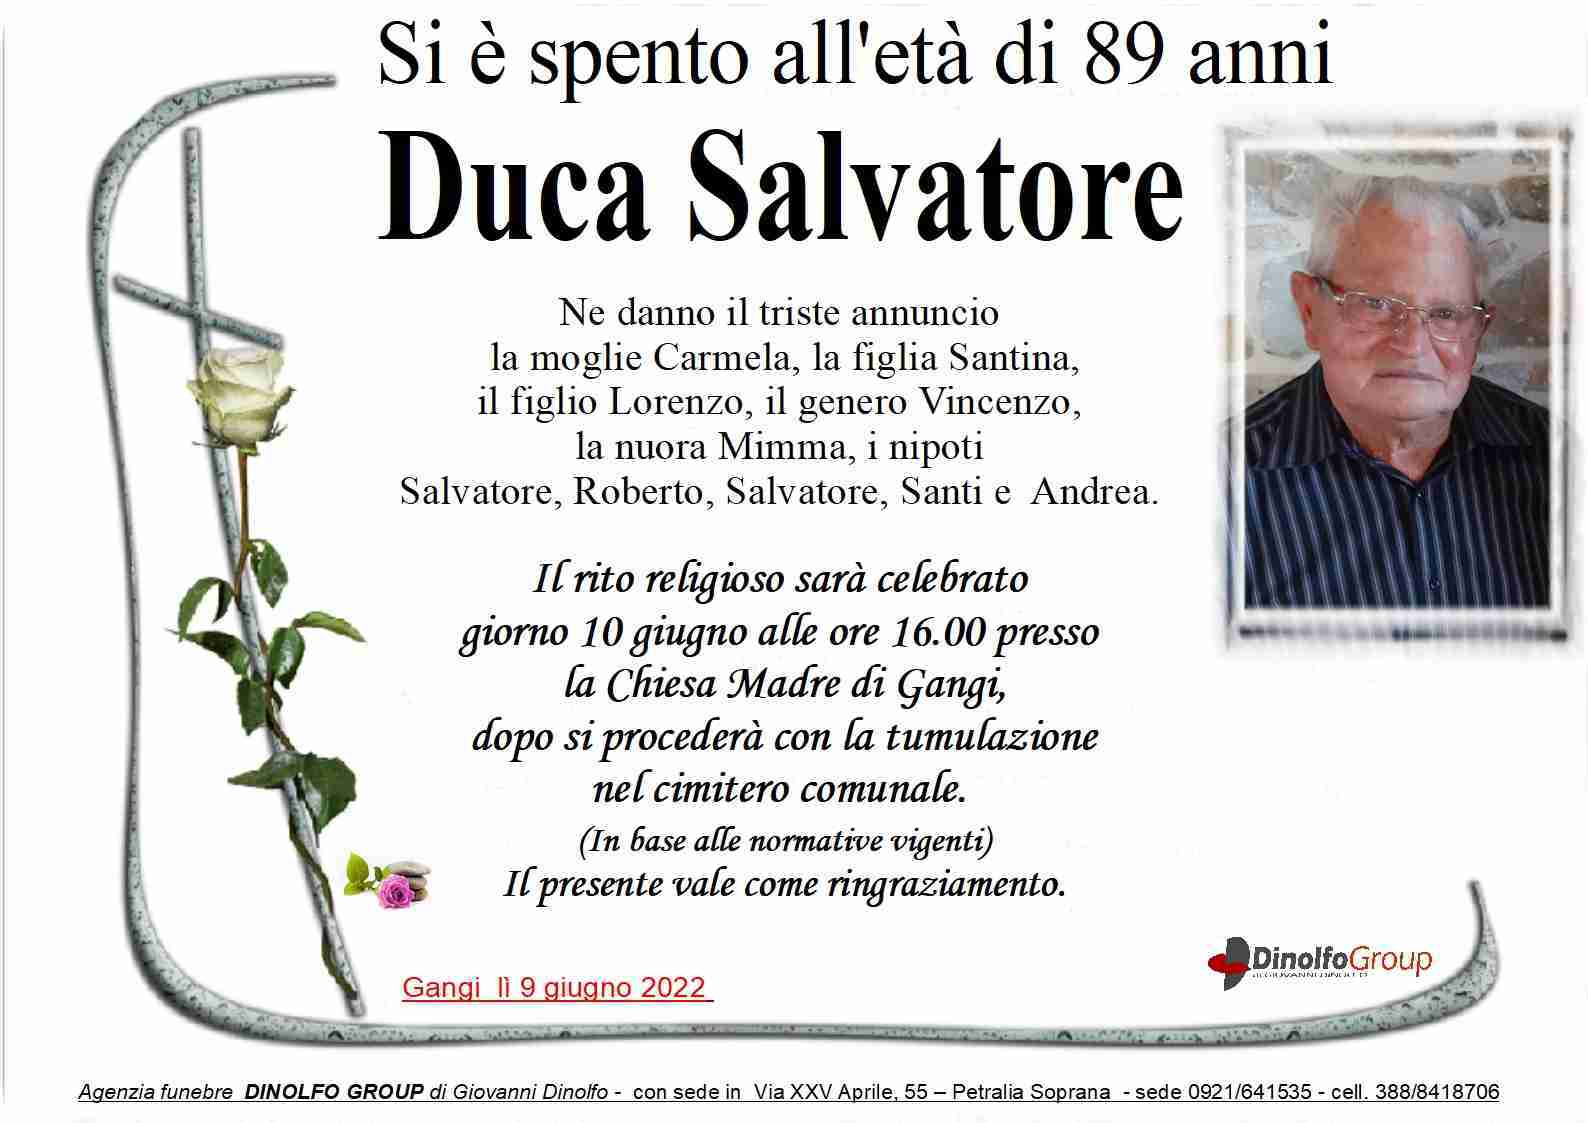 Salvatore Duca